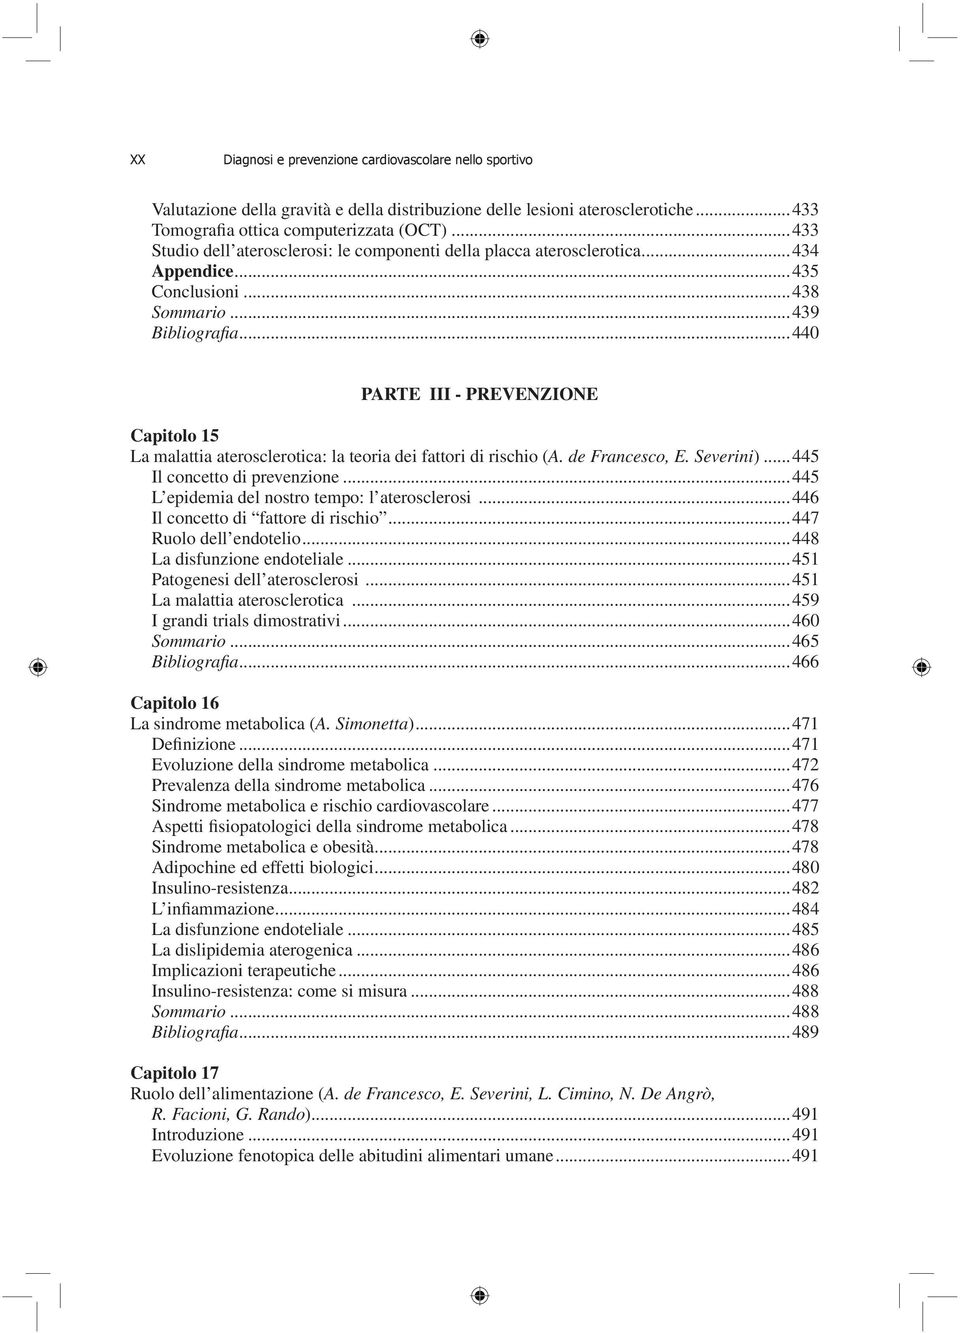 ..440 PARTE III - PREVENZIONE Capitolo 15 La malattia aterosclerotica: la teoria dei fattori di rischio (A. de Francesco, E. Severini)...445 Il concetto di prevenzione.